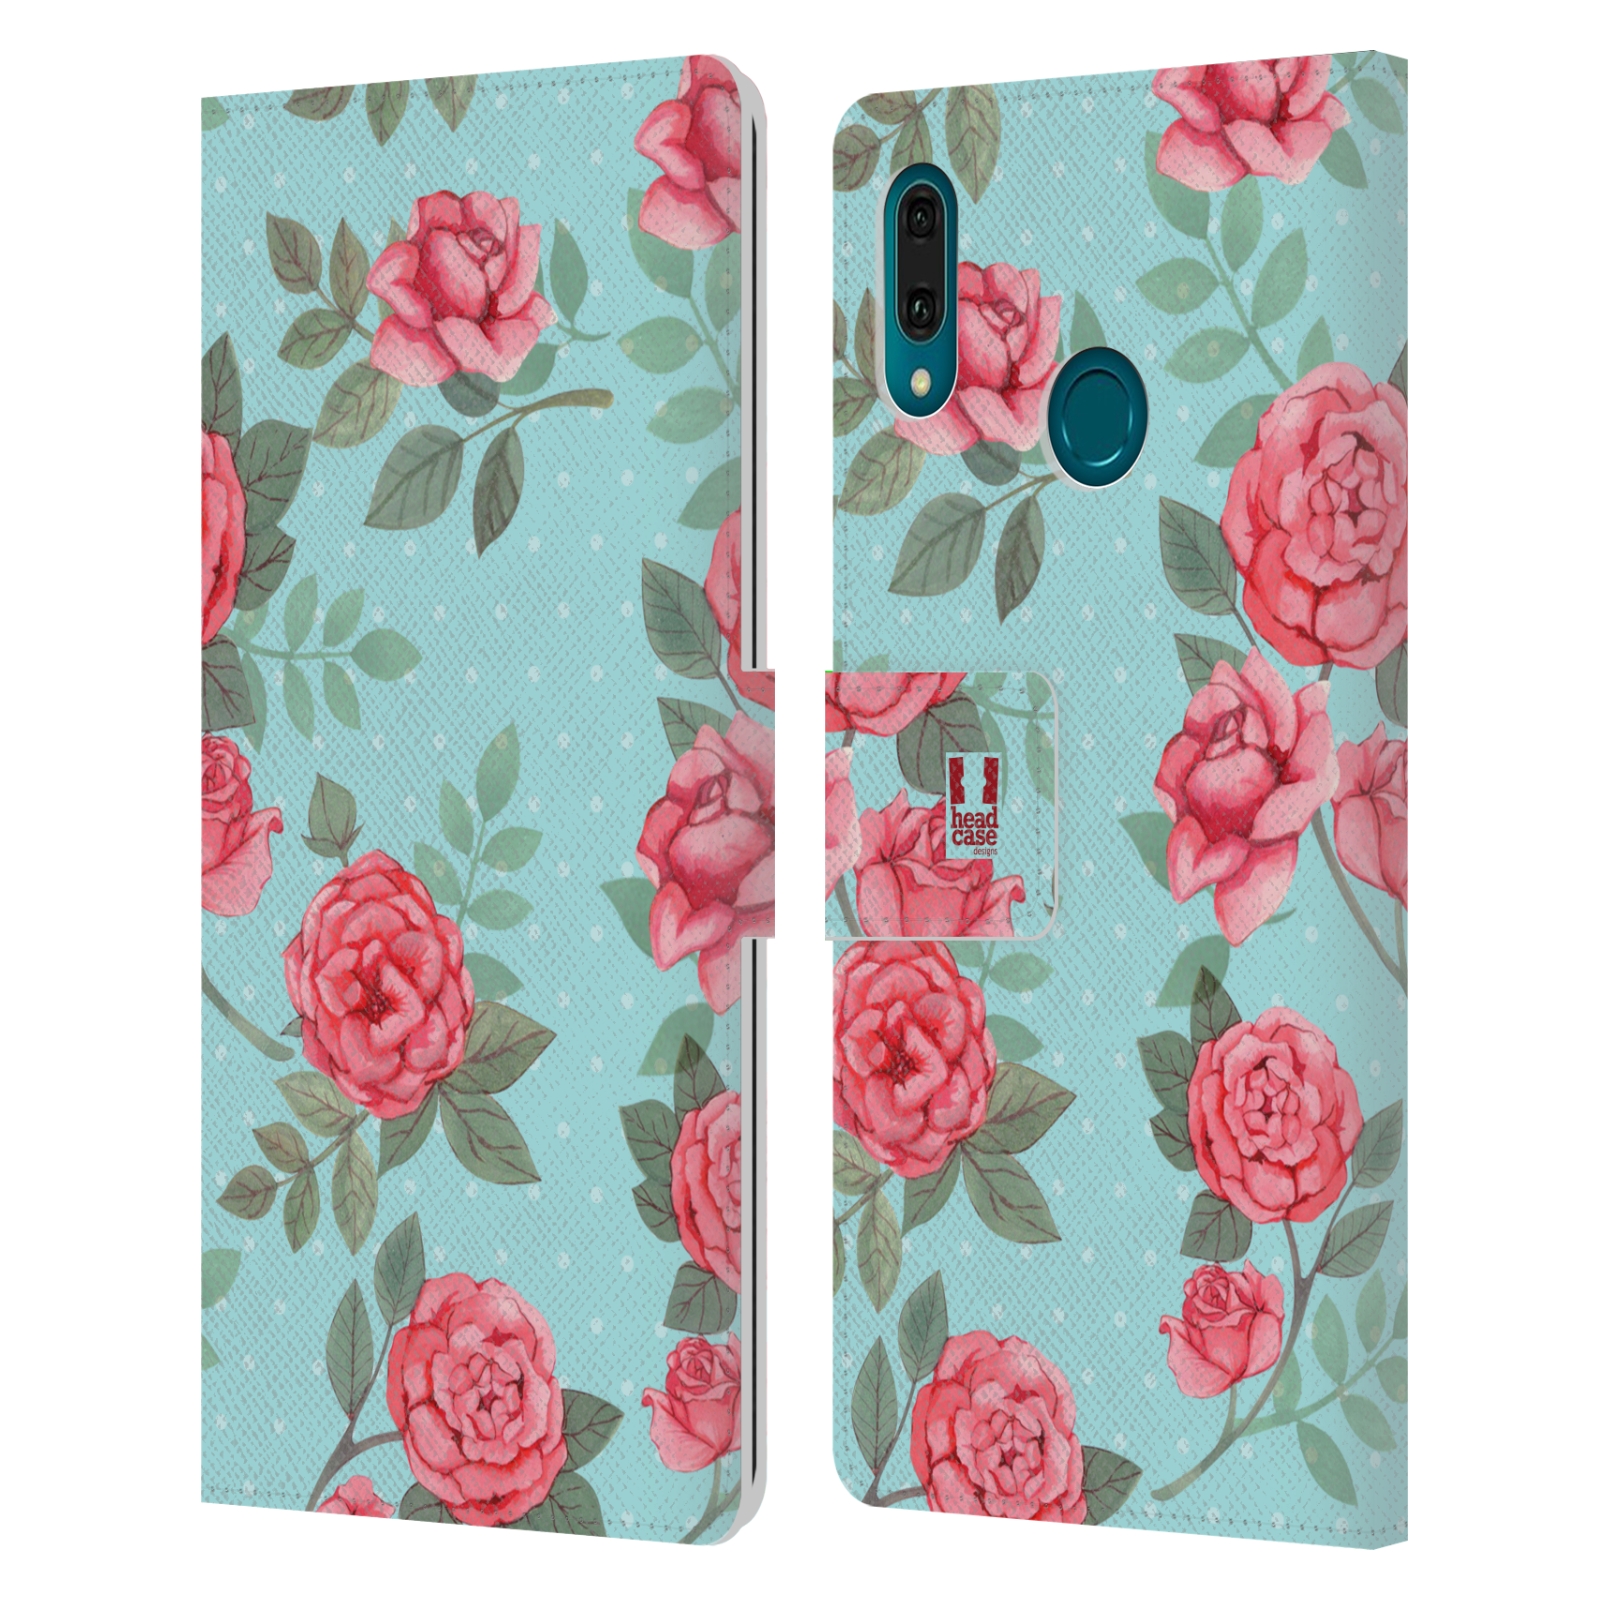 Pouzdro na mobil Huawei Y9 2019 romantické květy velké růže modrá a růžová